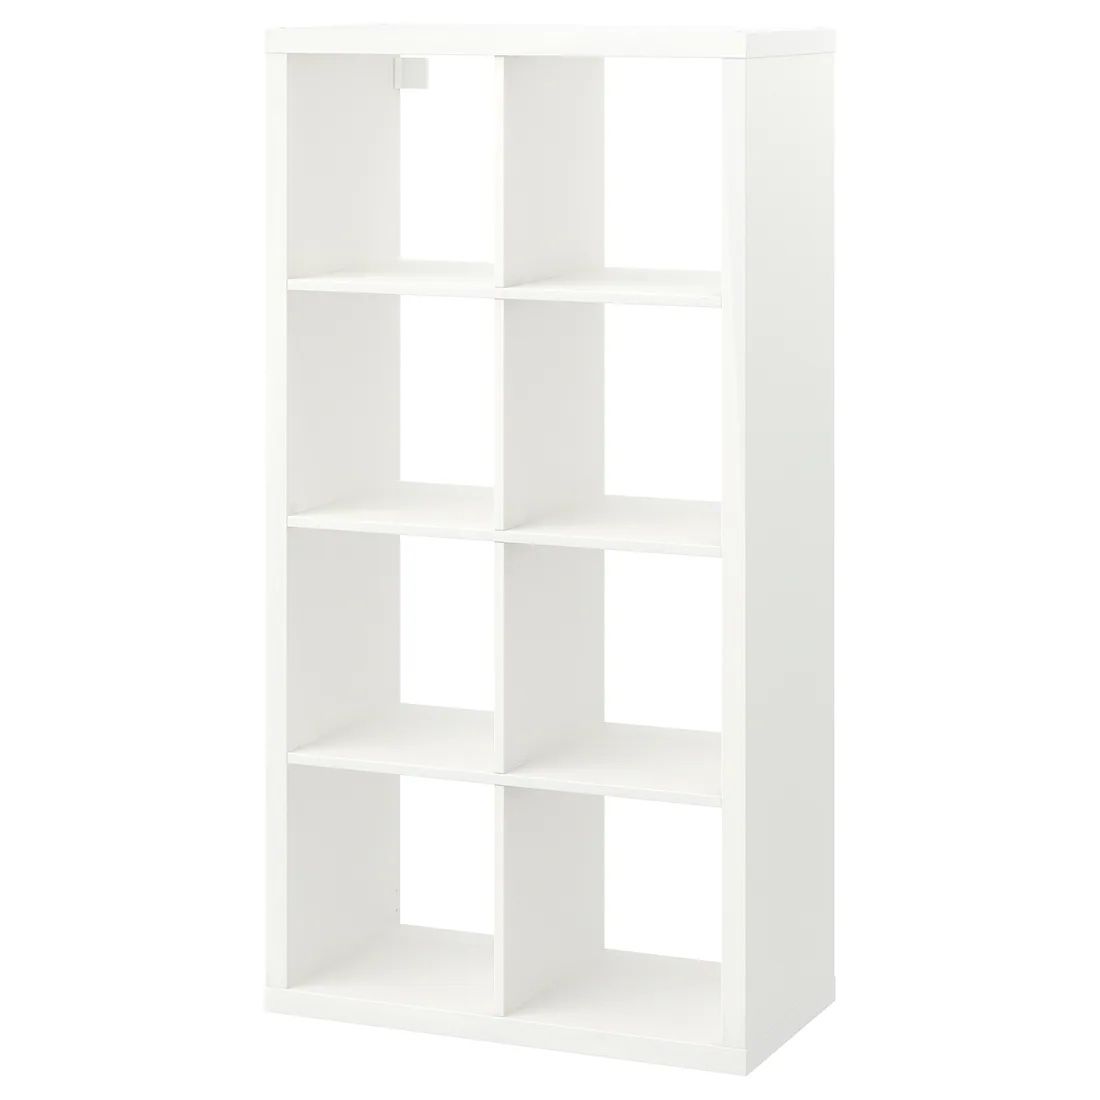 Shelf unit, white, 30 1/8x57 5/8 "